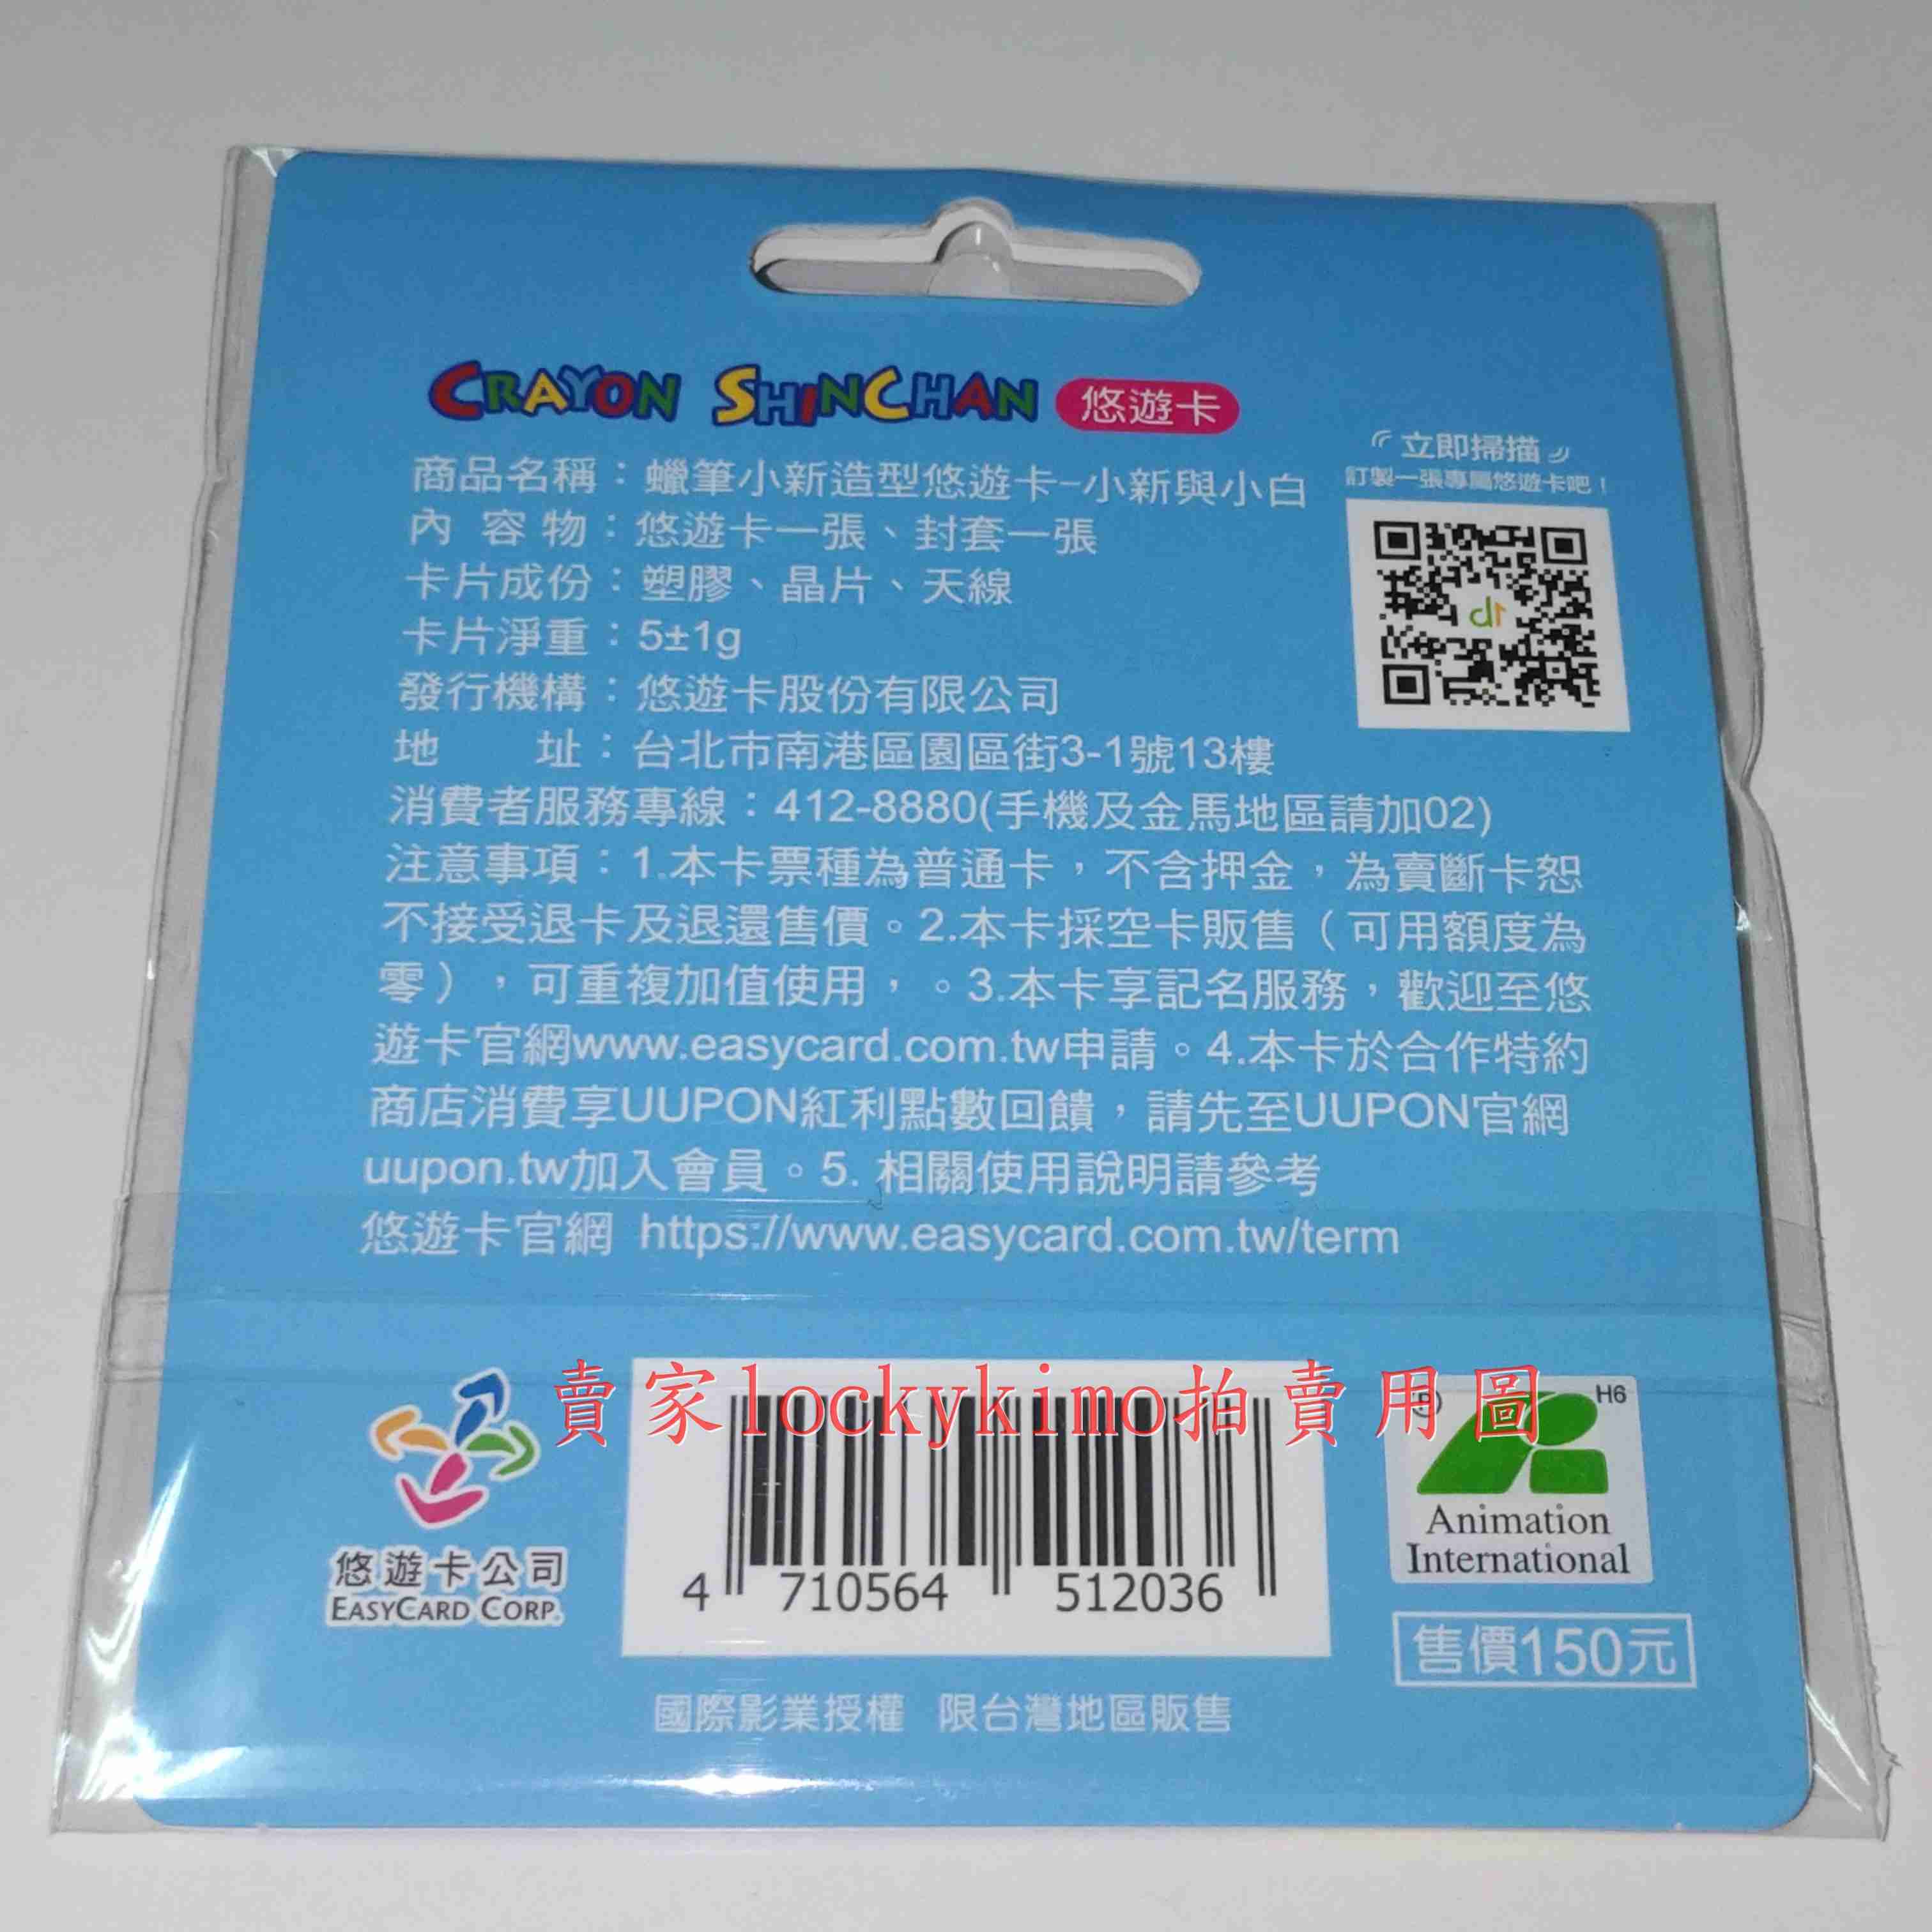 【蠟筆小新 造型 悠遊卡 小新與小白 空卡 鑰匙圈】Crayon Shinchan 捷運卡 EASYCARD YOYO卡